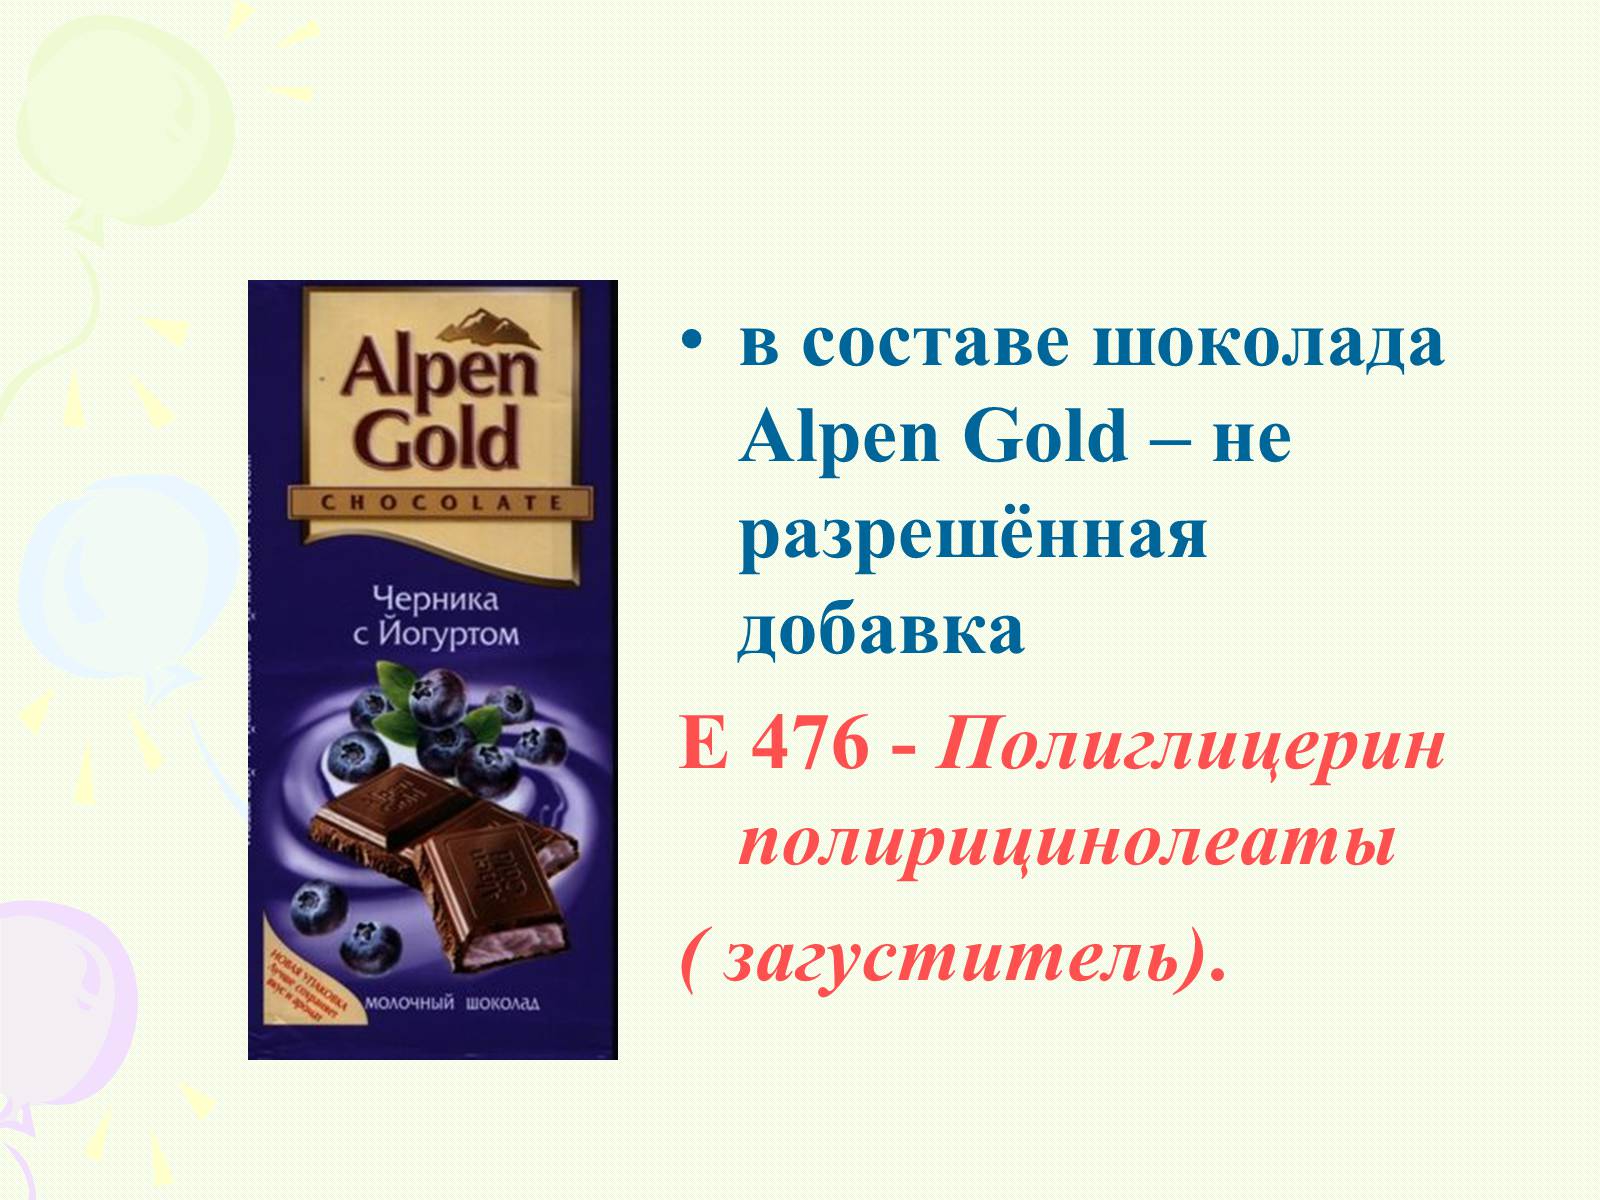 Эмульгатор е476. Alpen Gold шоколад e476. Шоколад Альпен Гольде добавки. Пищевые добавки шоколада Альпен Голд шоколадный. Добавки в шоколаде Альпен Гольд.